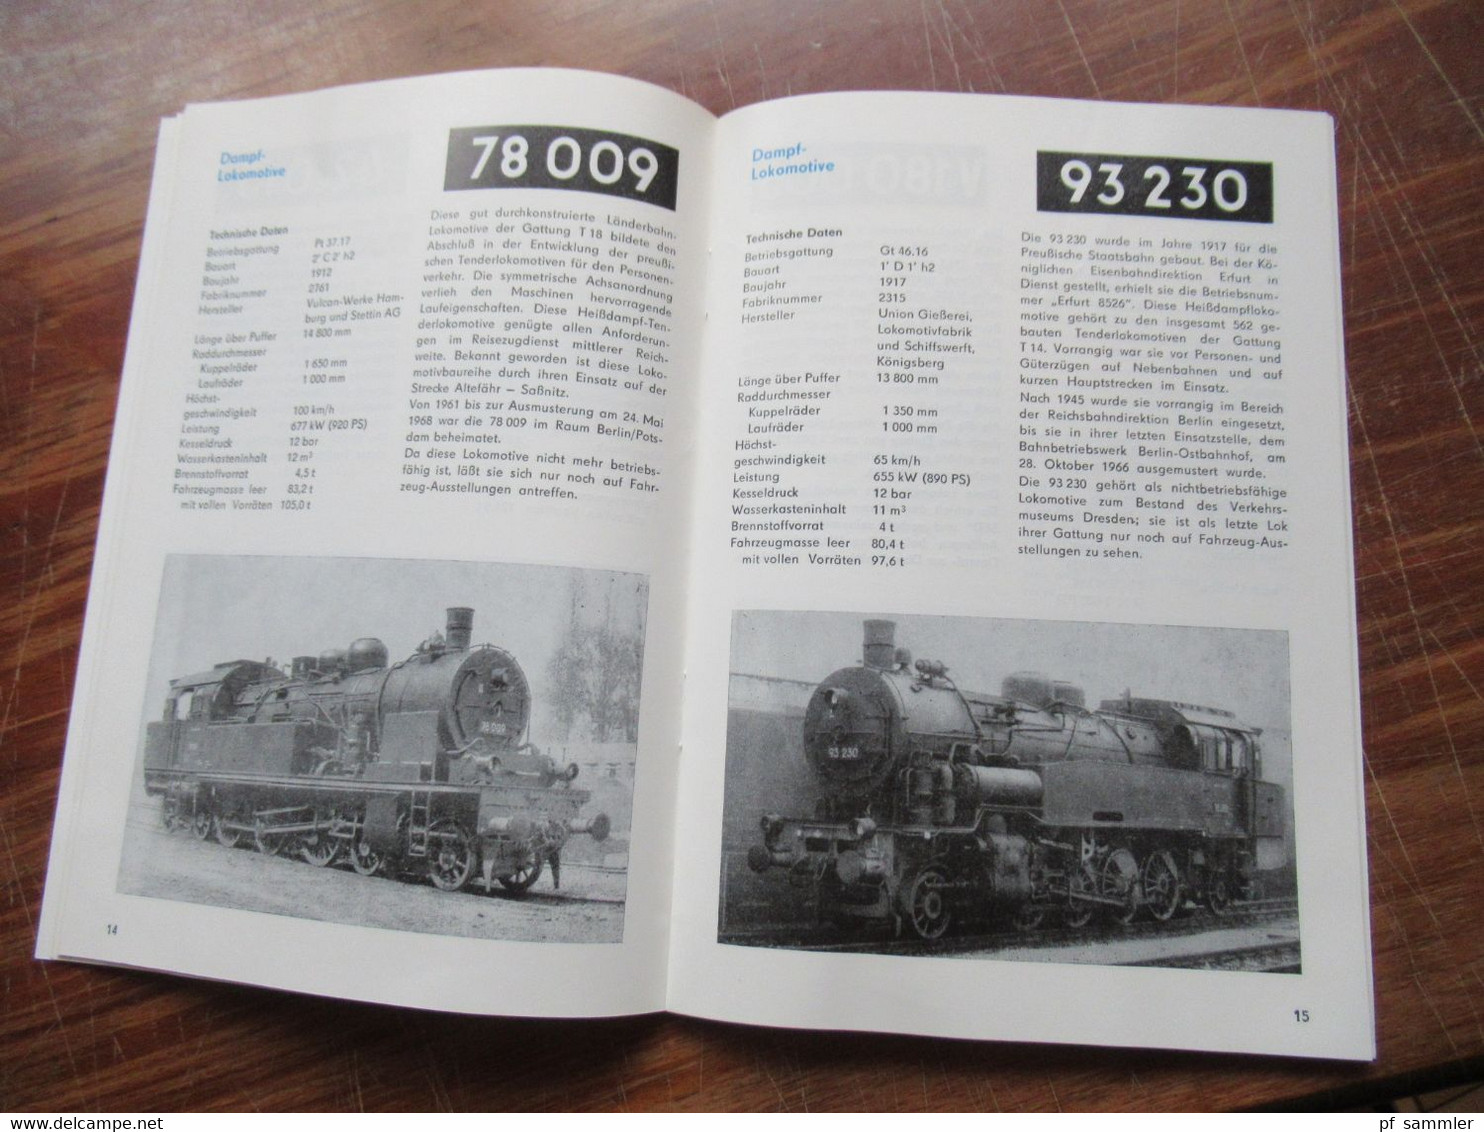 Katalog Eisenbahn-Fahrzeug-Ausstellung 17. - 25.9.1988 Bf Potsdam Stadt Deutscher Modelleisenbahn Verband der DDR